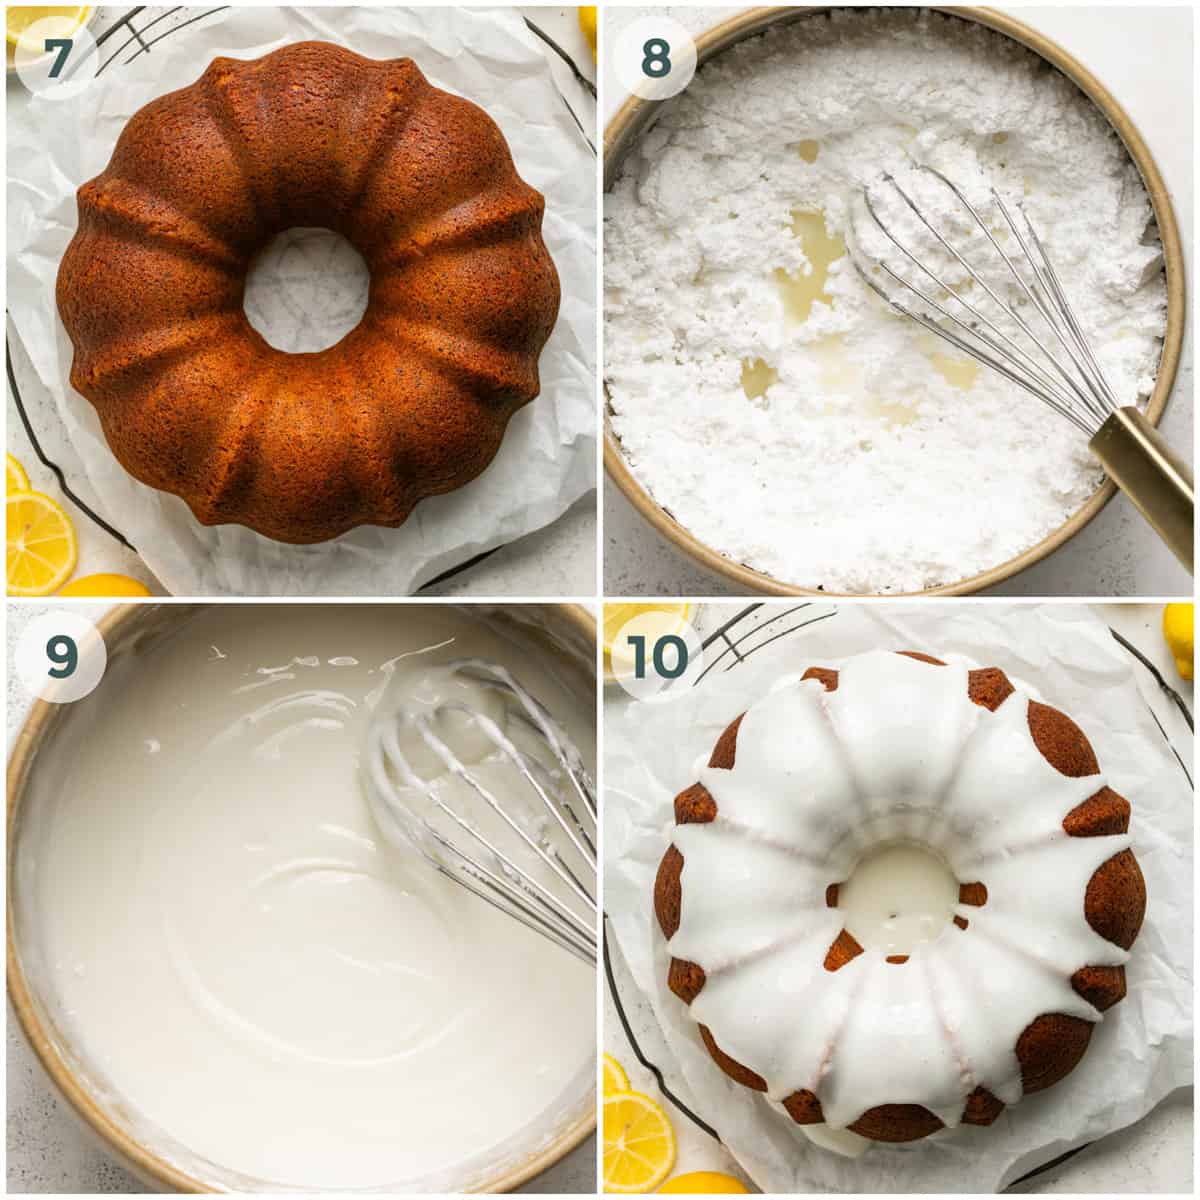 steps 7-10 for lemon poppy seed cake recipe